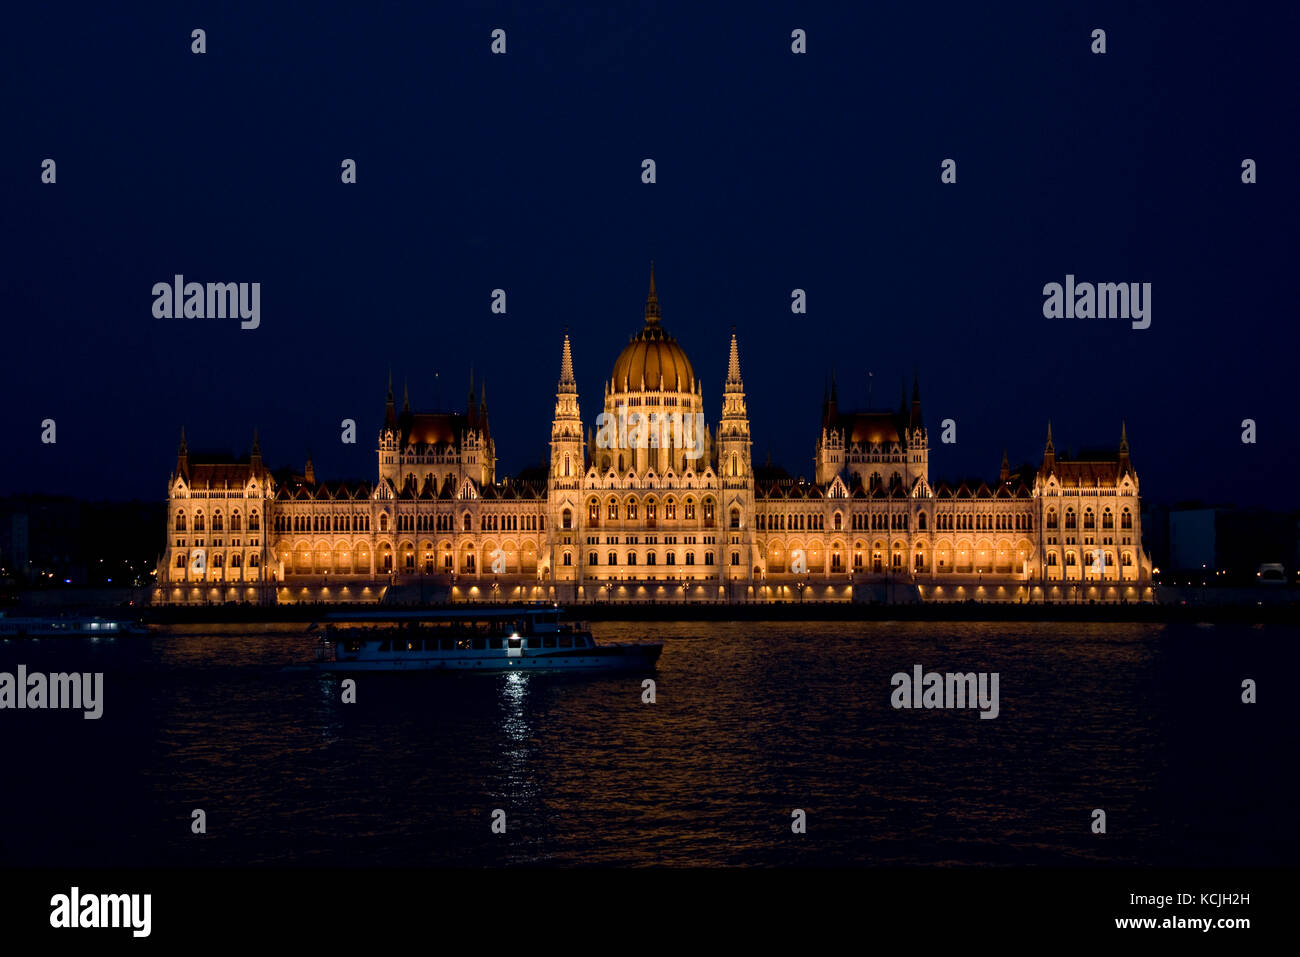 Ein abendlicher Blick auf das ungarische Parlamentsgebäude an der Donau in Budapest mit einem touristischen Flussschiff, das vorbeifährt. Stockfoto